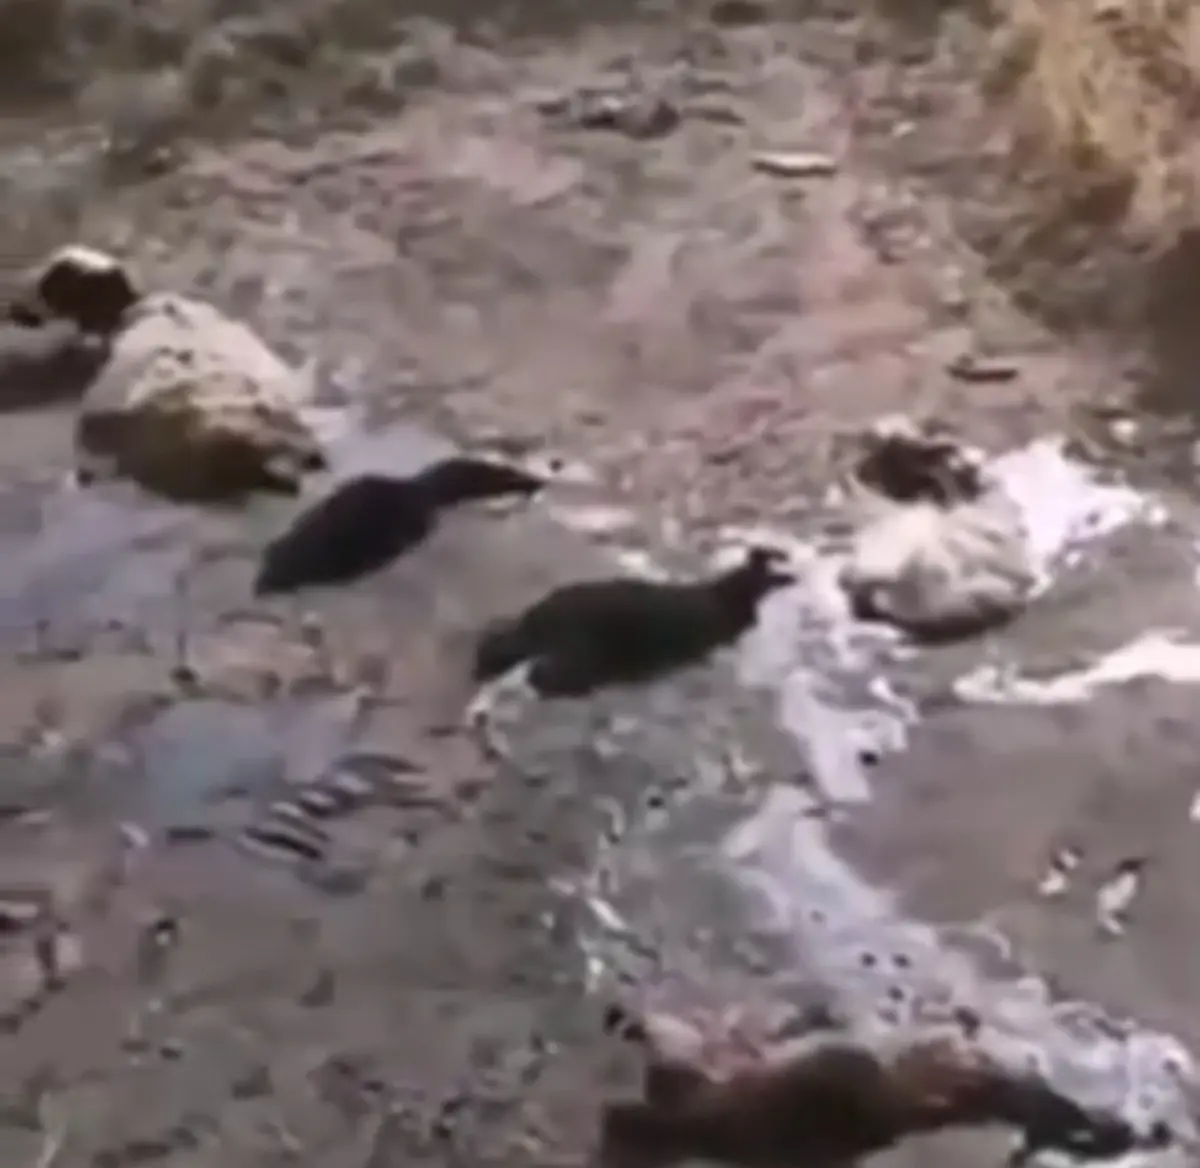 ماجرای گوسفندها و کشته شدن در قیرهای منطقه مهرشهر کرج + ویدئو